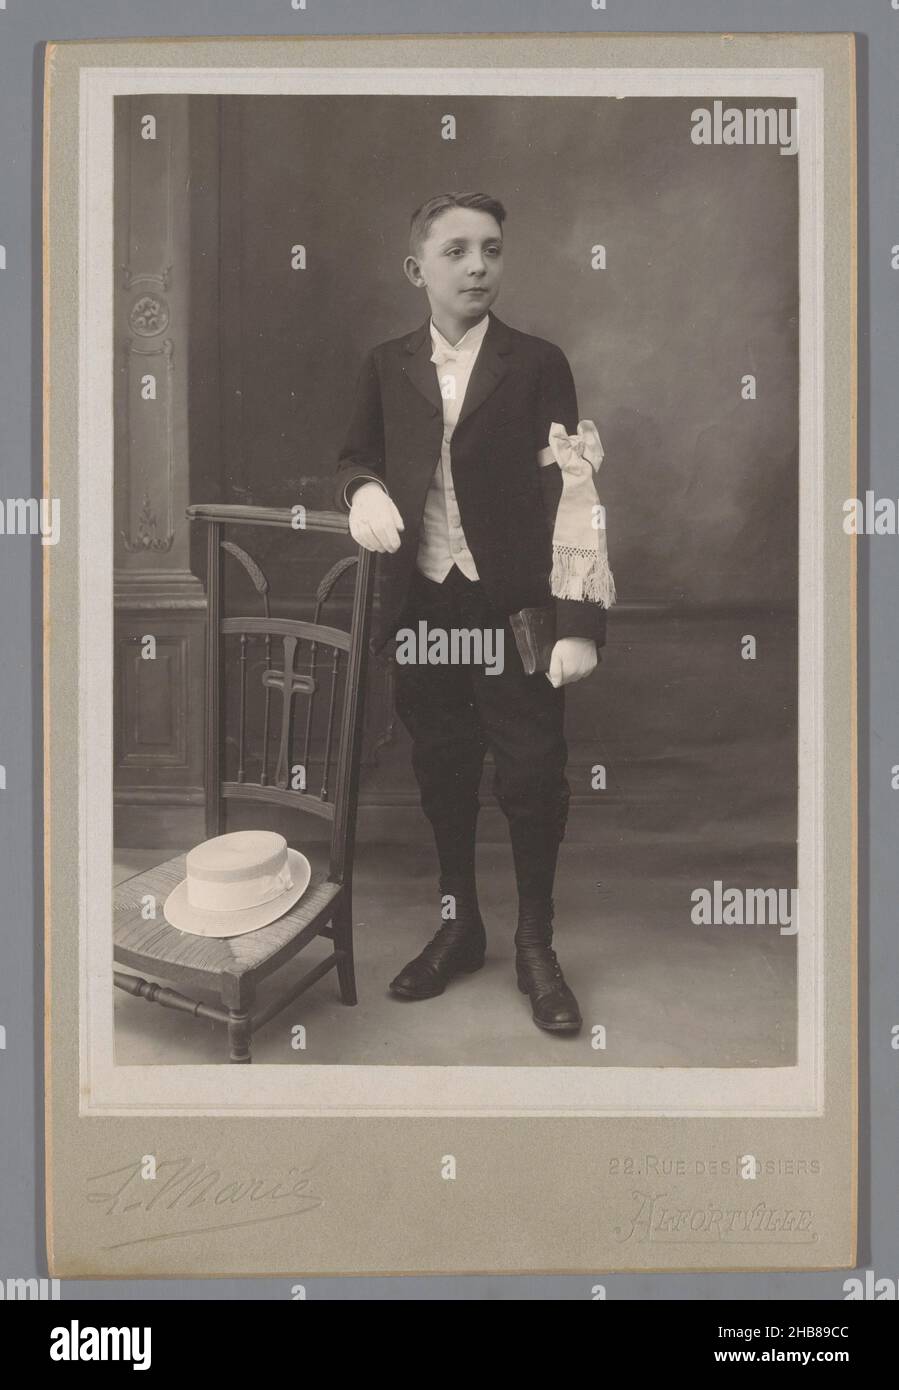 Portrait d'un communicant inconnu, François Marie (mentionné sur l'objet), Belgique, c.1880 - c.1915, support photographique, carton, imprimé gélatine-argent, hauteur 128 mm × largeur 90 mm Banque D'Images